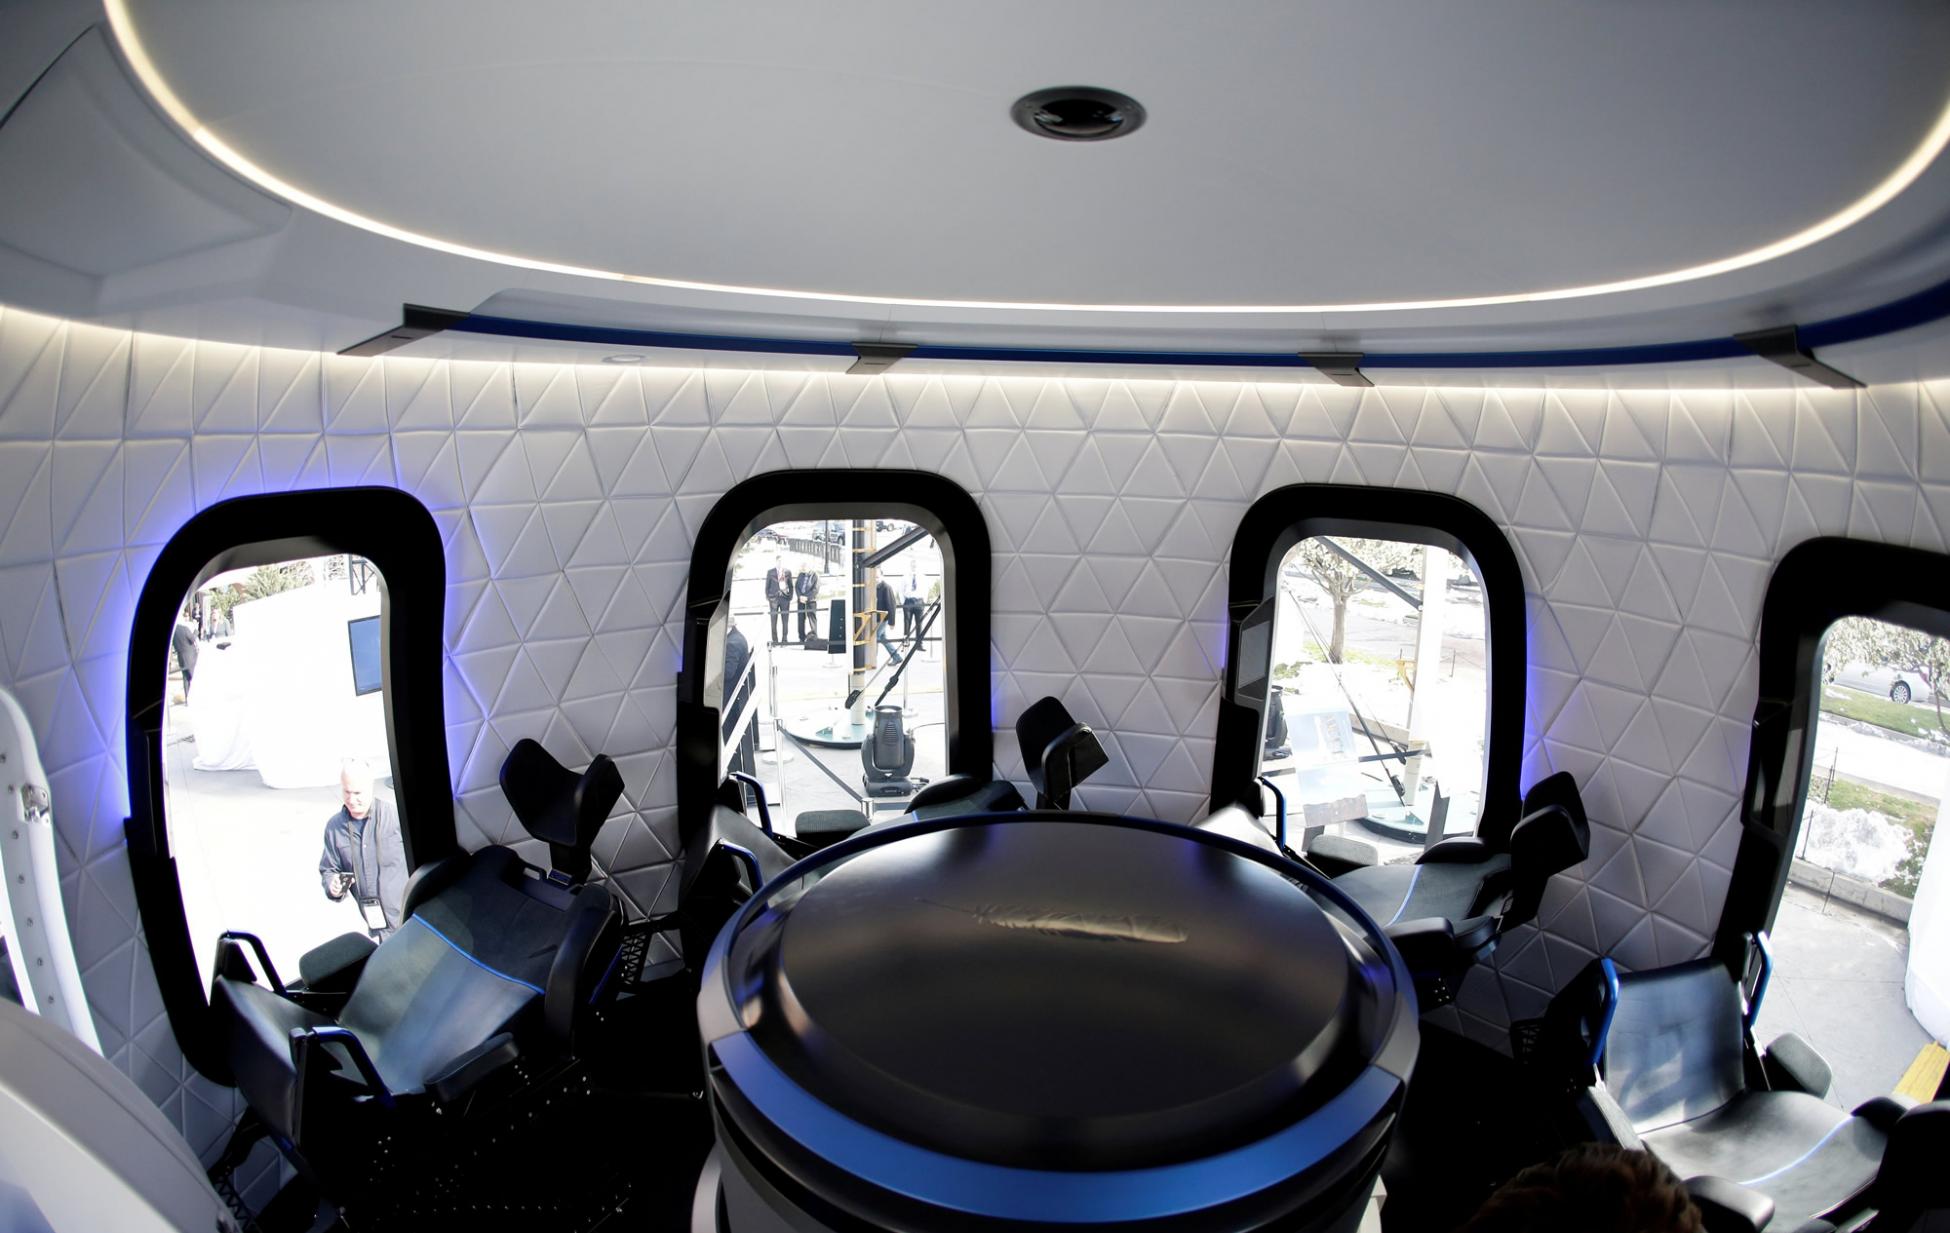 亚马逊创办人贝佐斯即将搭乘“新雪帕德号”太空船抵达太空分界线“卡门线”